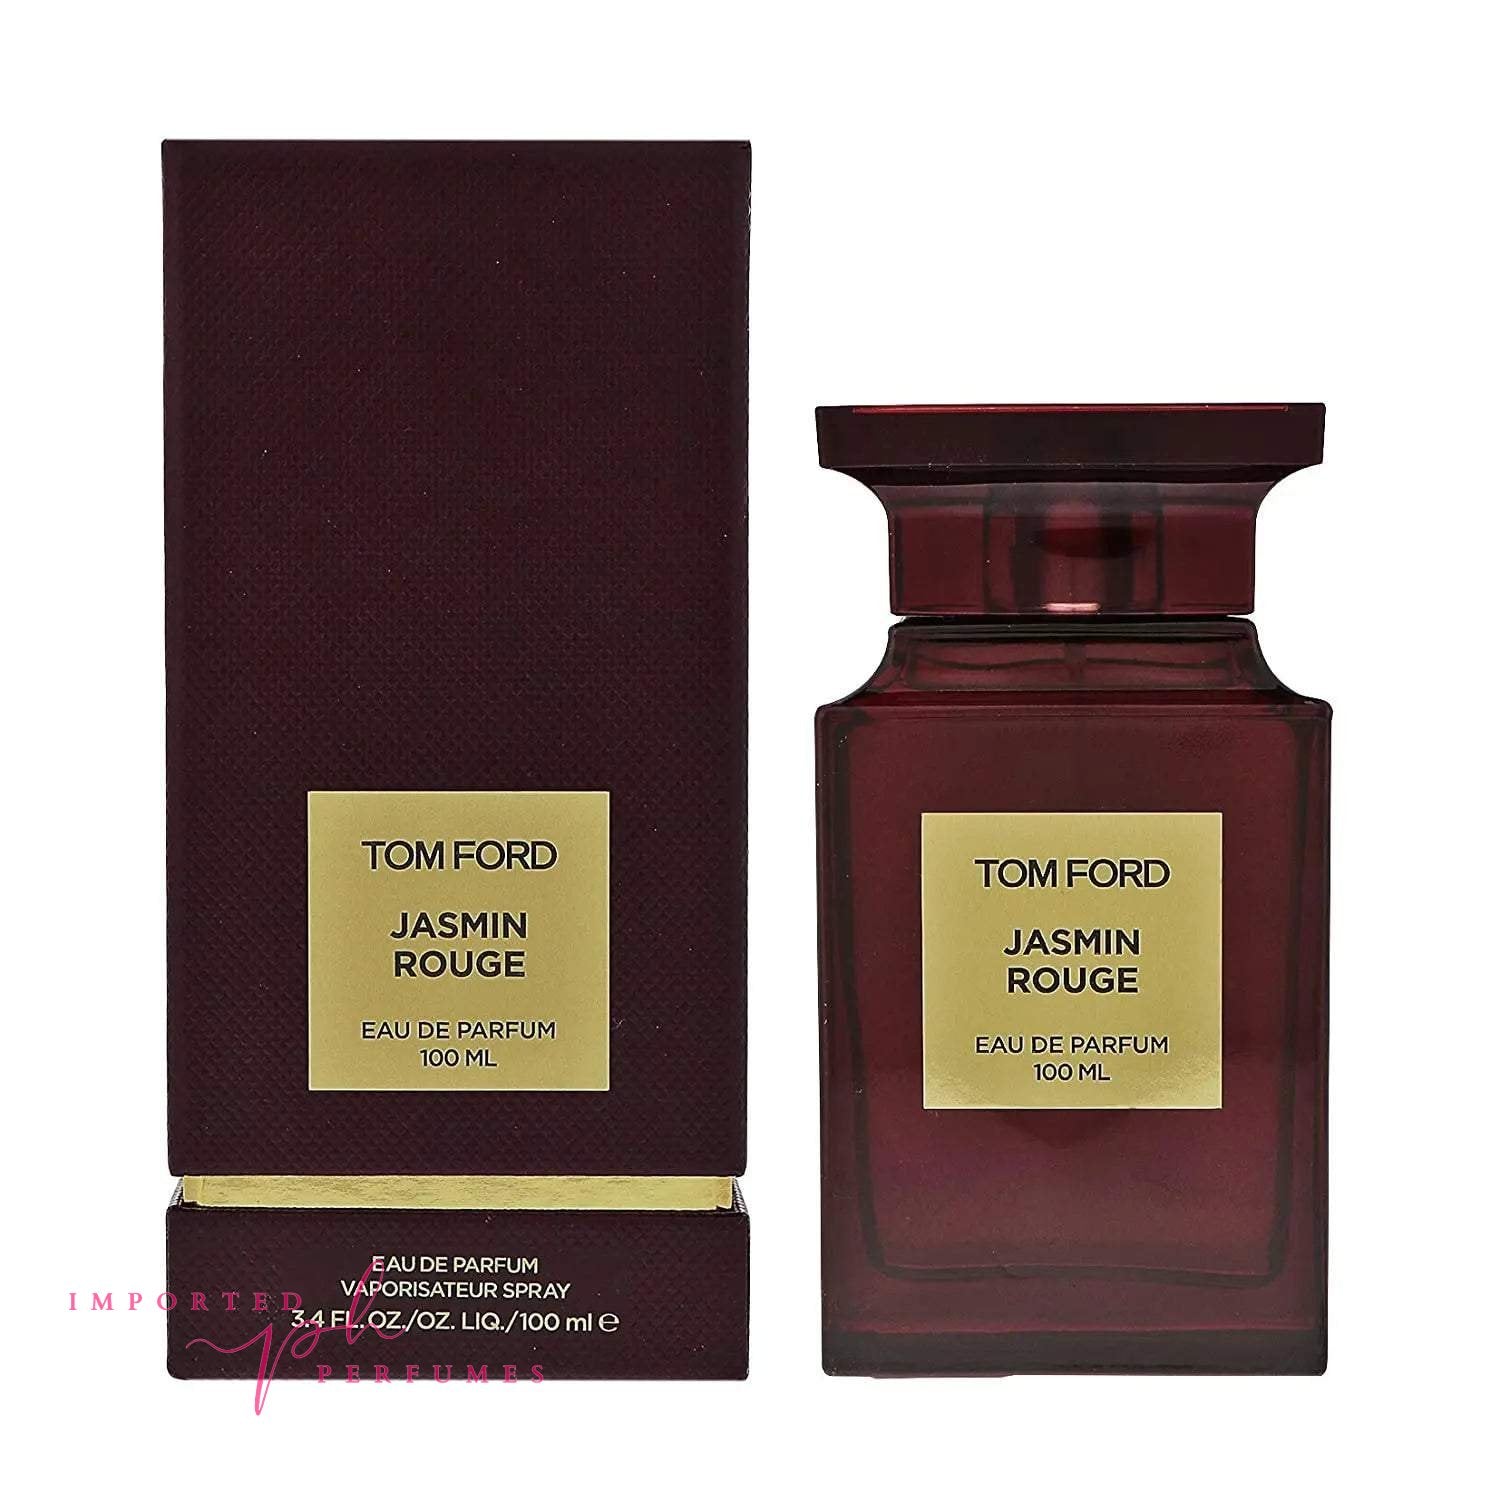 Tom Ford Jasmin Rouge Eau De Parfum 100ml For Women-Imported Perfumes Co-For WOmen,Tom Ford,Tom Ford Women,Women,Women Perfume